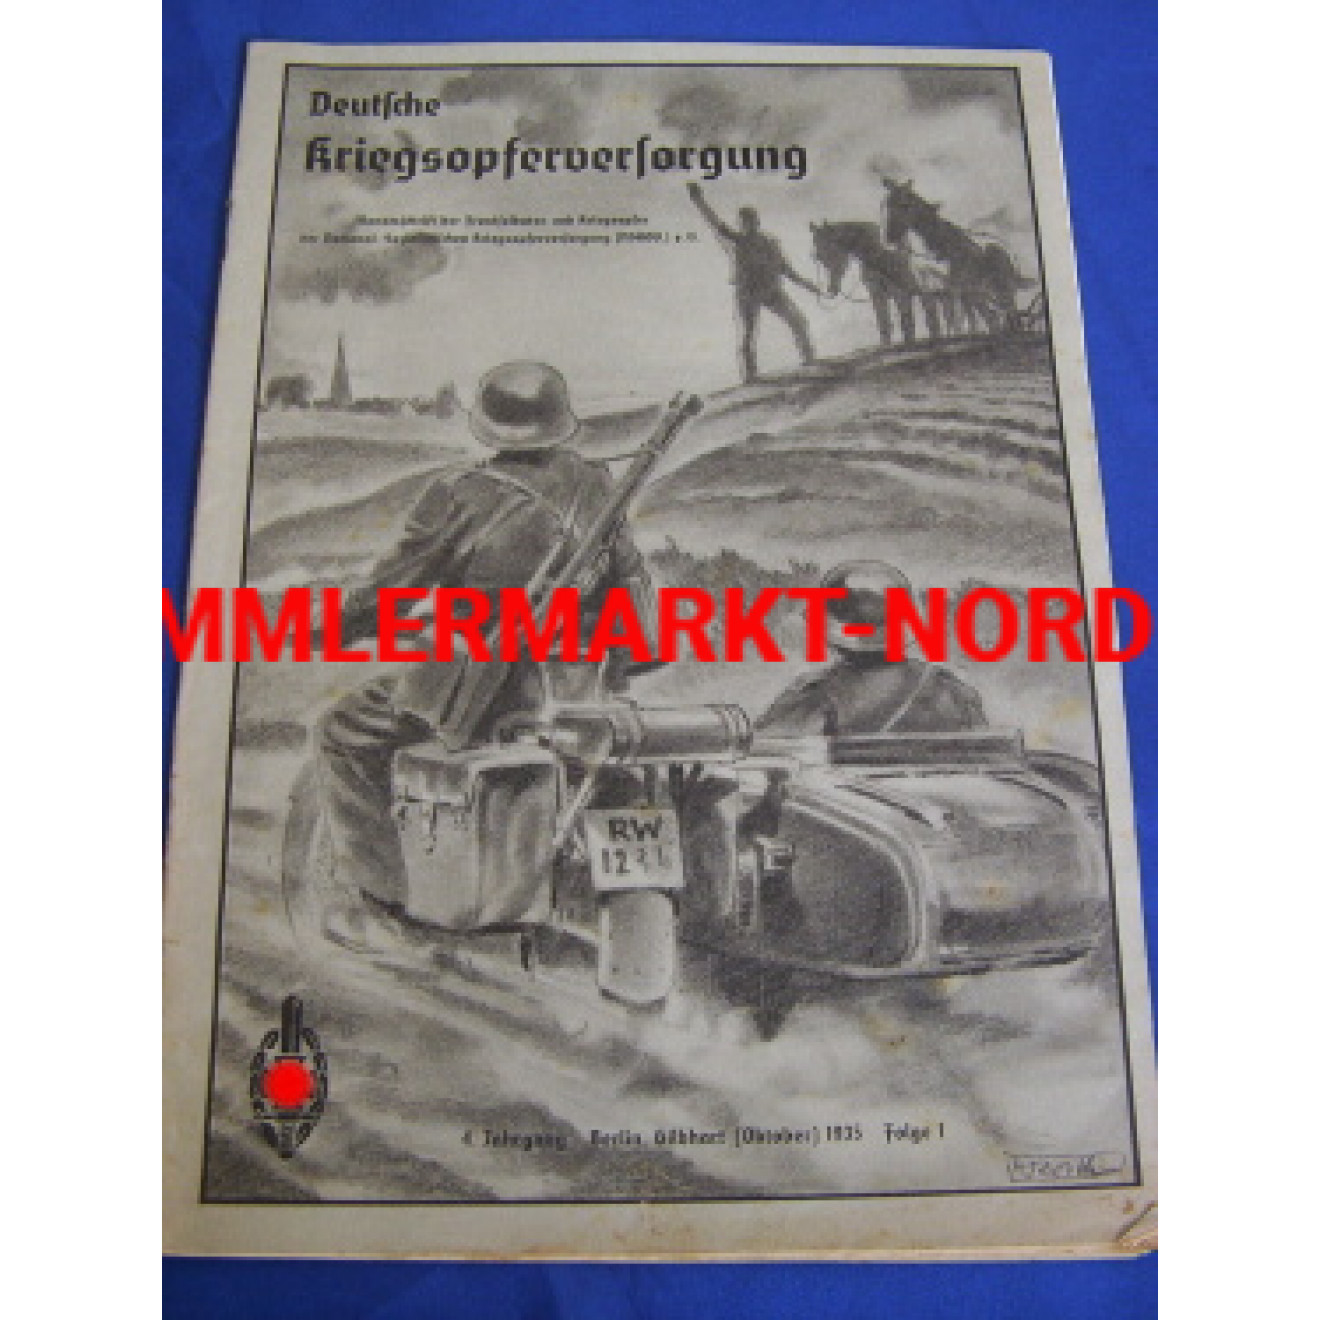 NSKOV Deutsche Kriegsopferversorgung, Oct. 1935